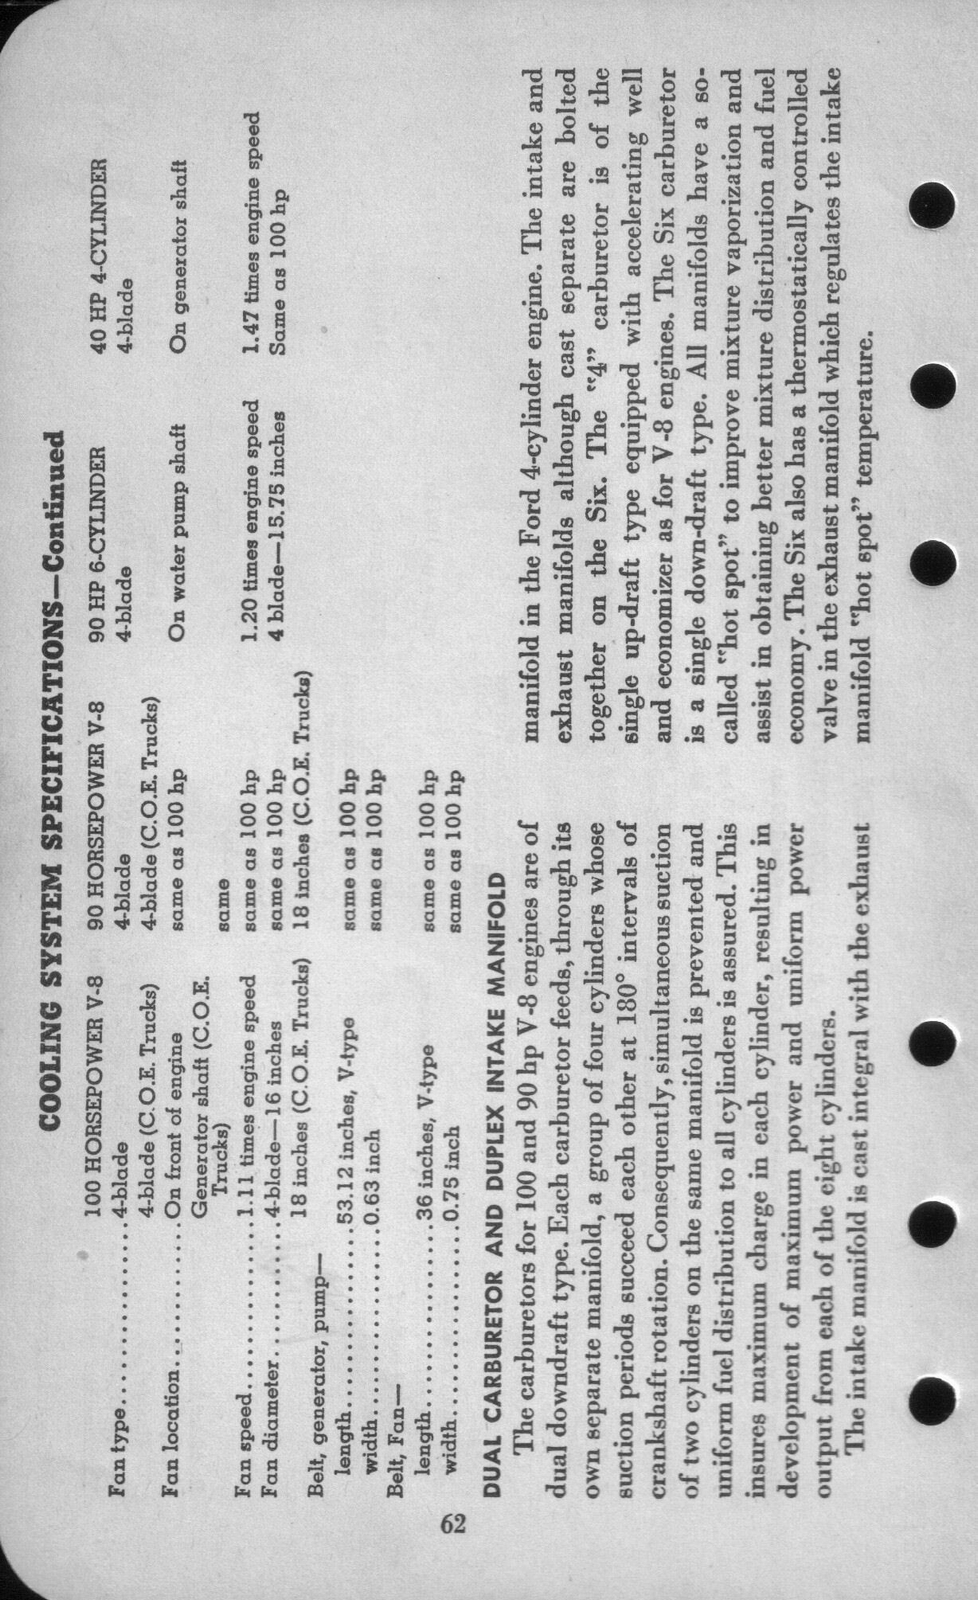 n_1942 Ford Salesmans Reference Manual-062.jpg